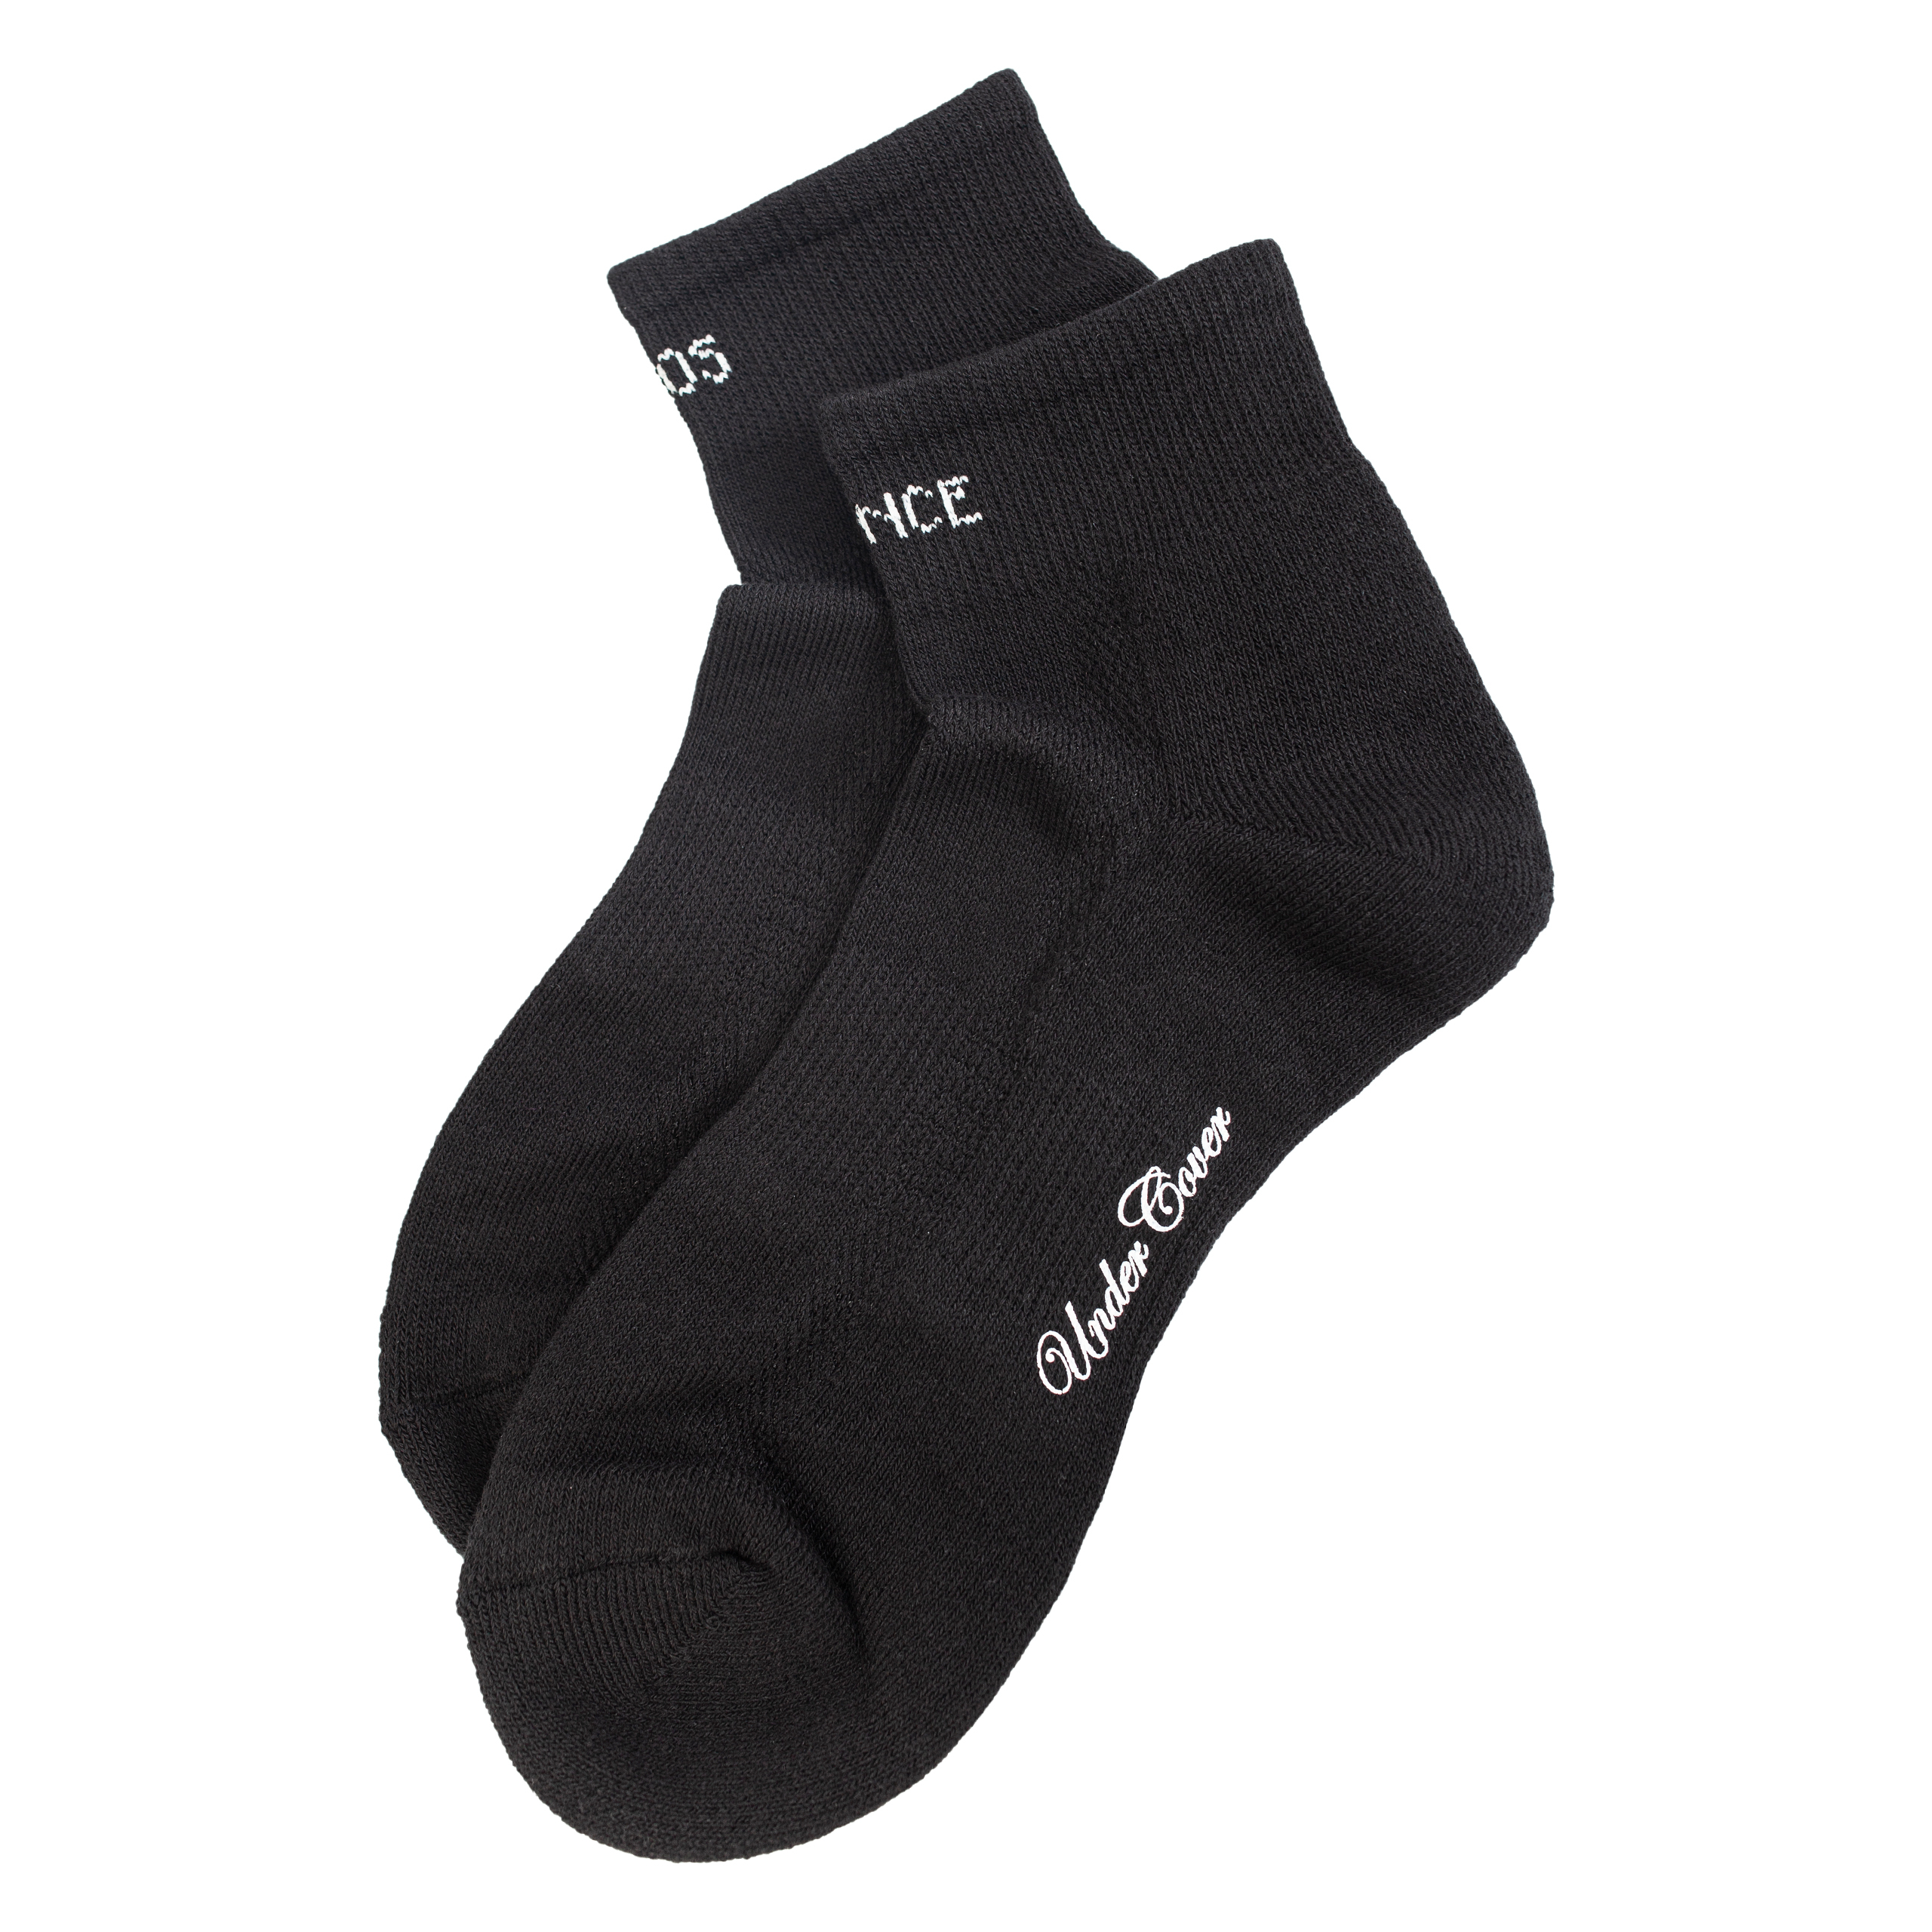 Черные носки Chaos Balance Undercover UC1B4L03/blk, размер One Size UC1B4L03/blk - фото 3